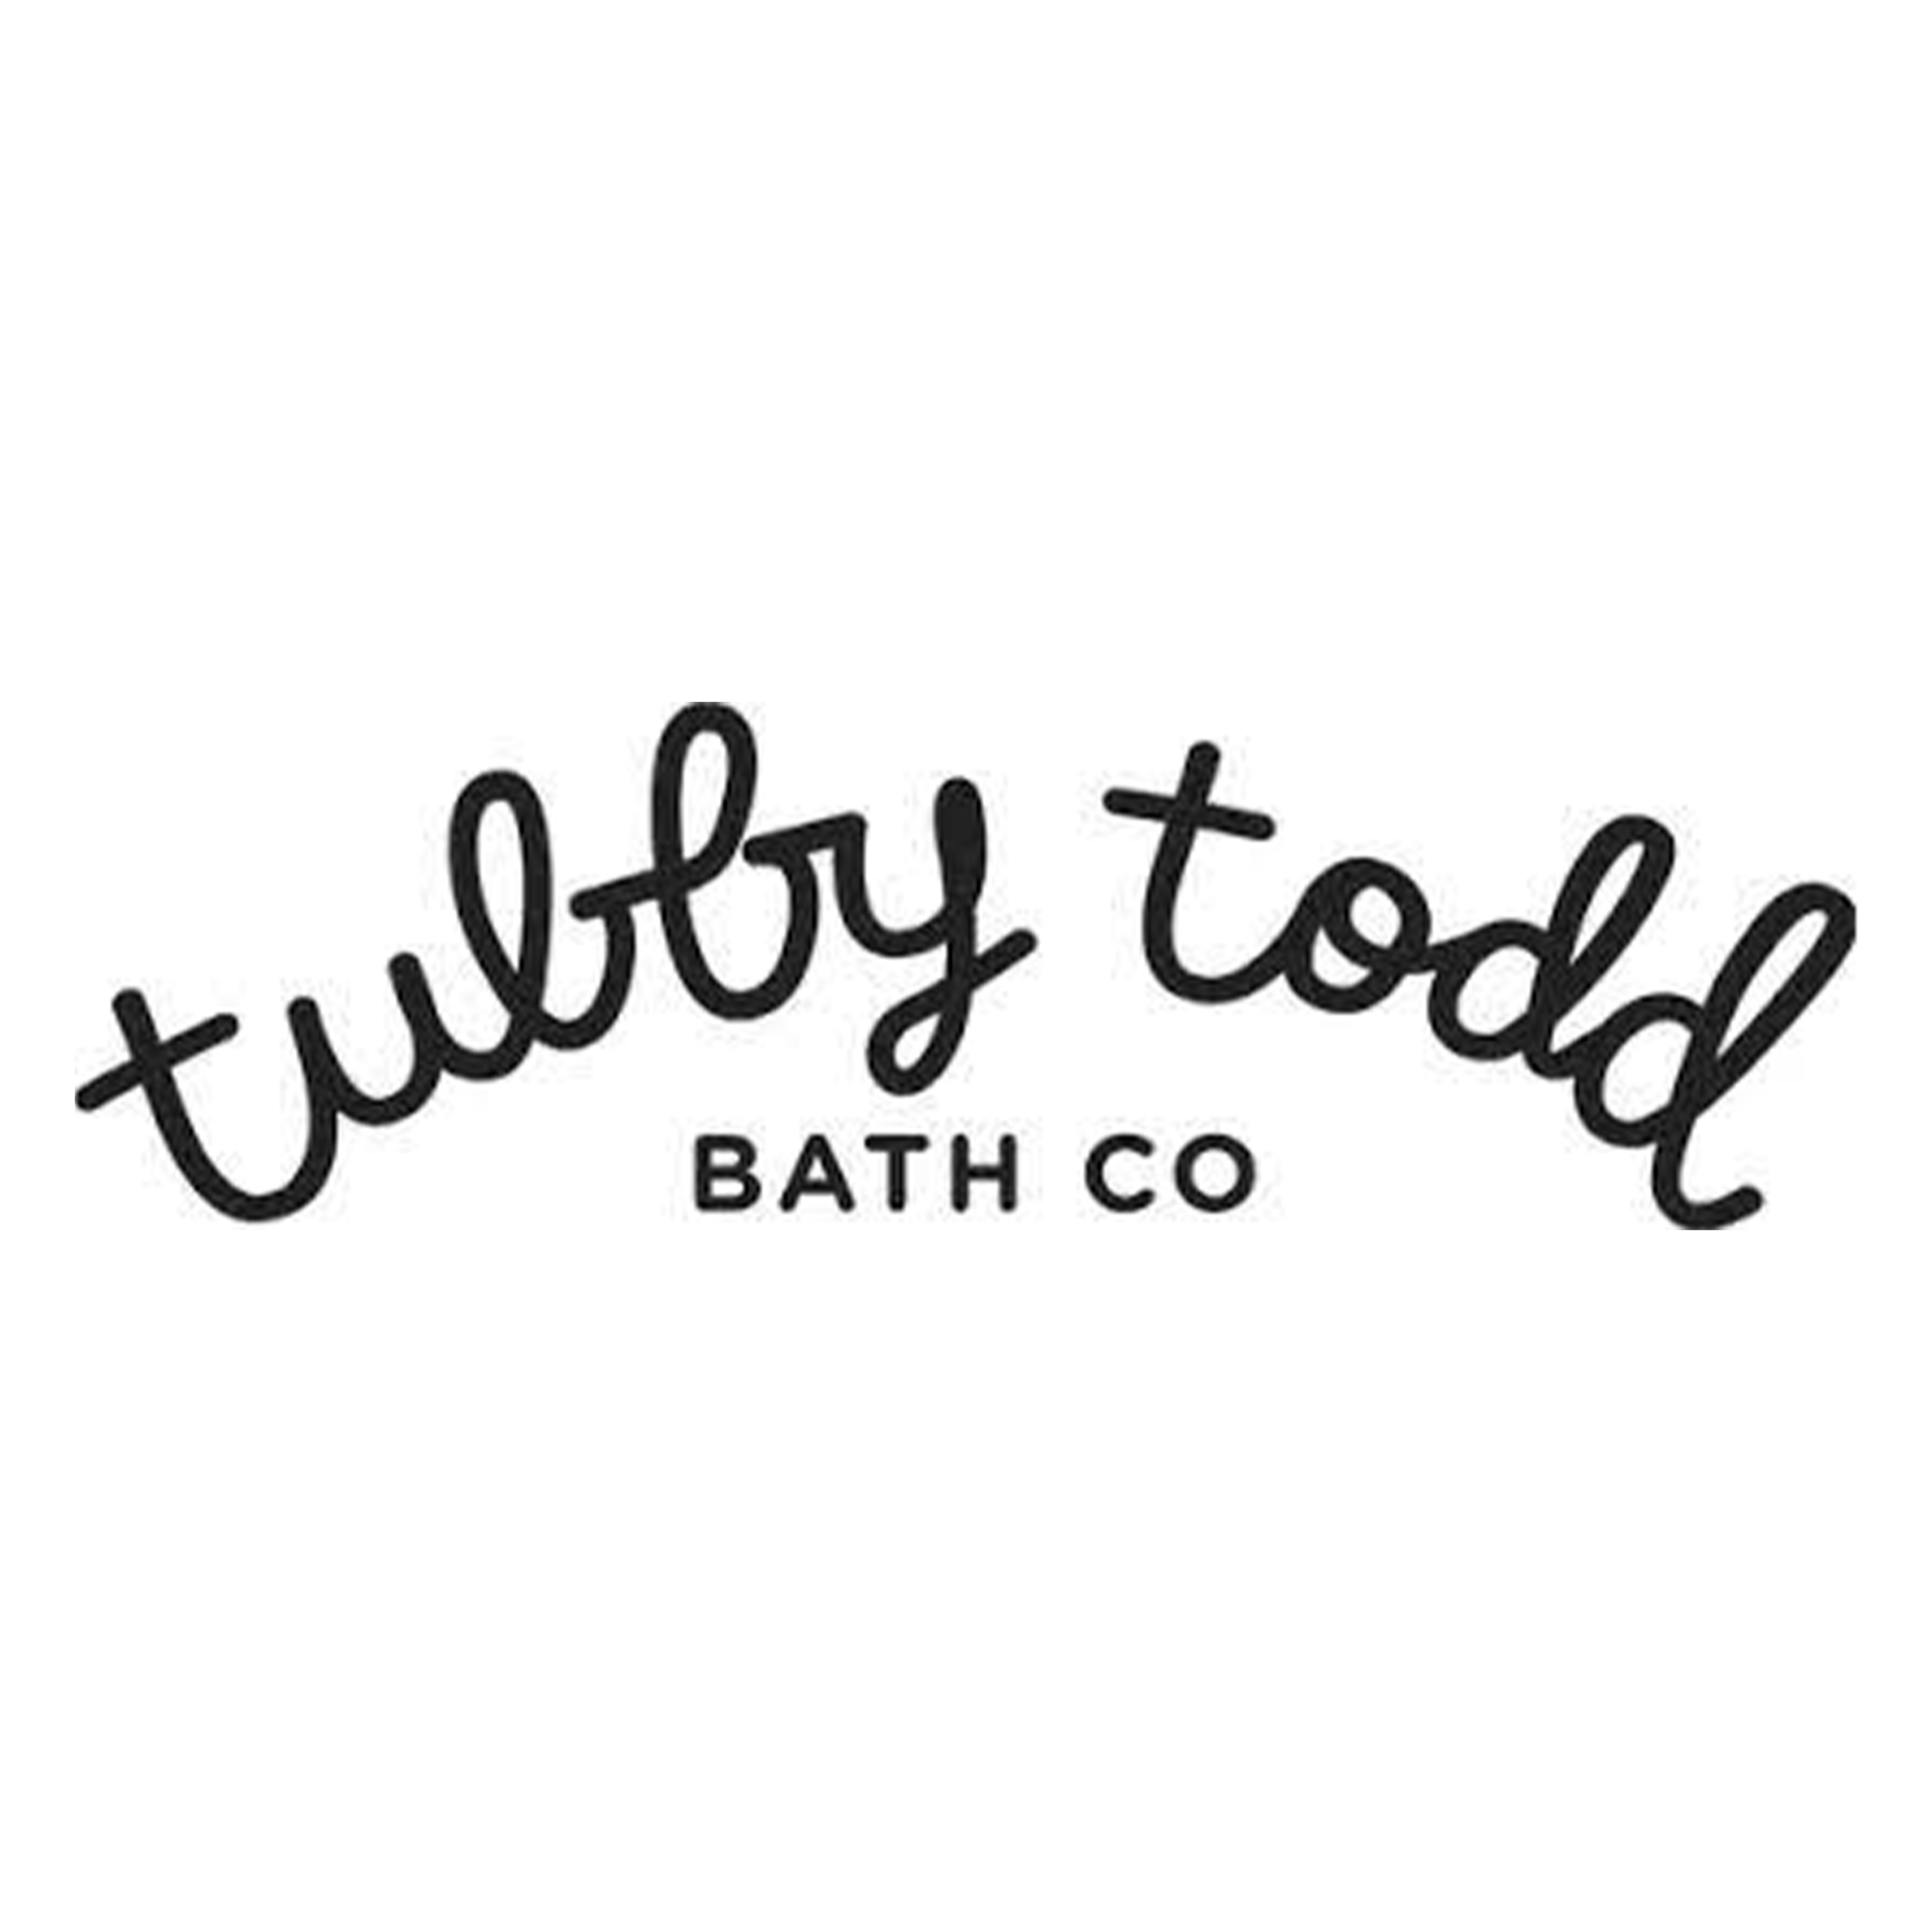 Shop Tubby todd logo